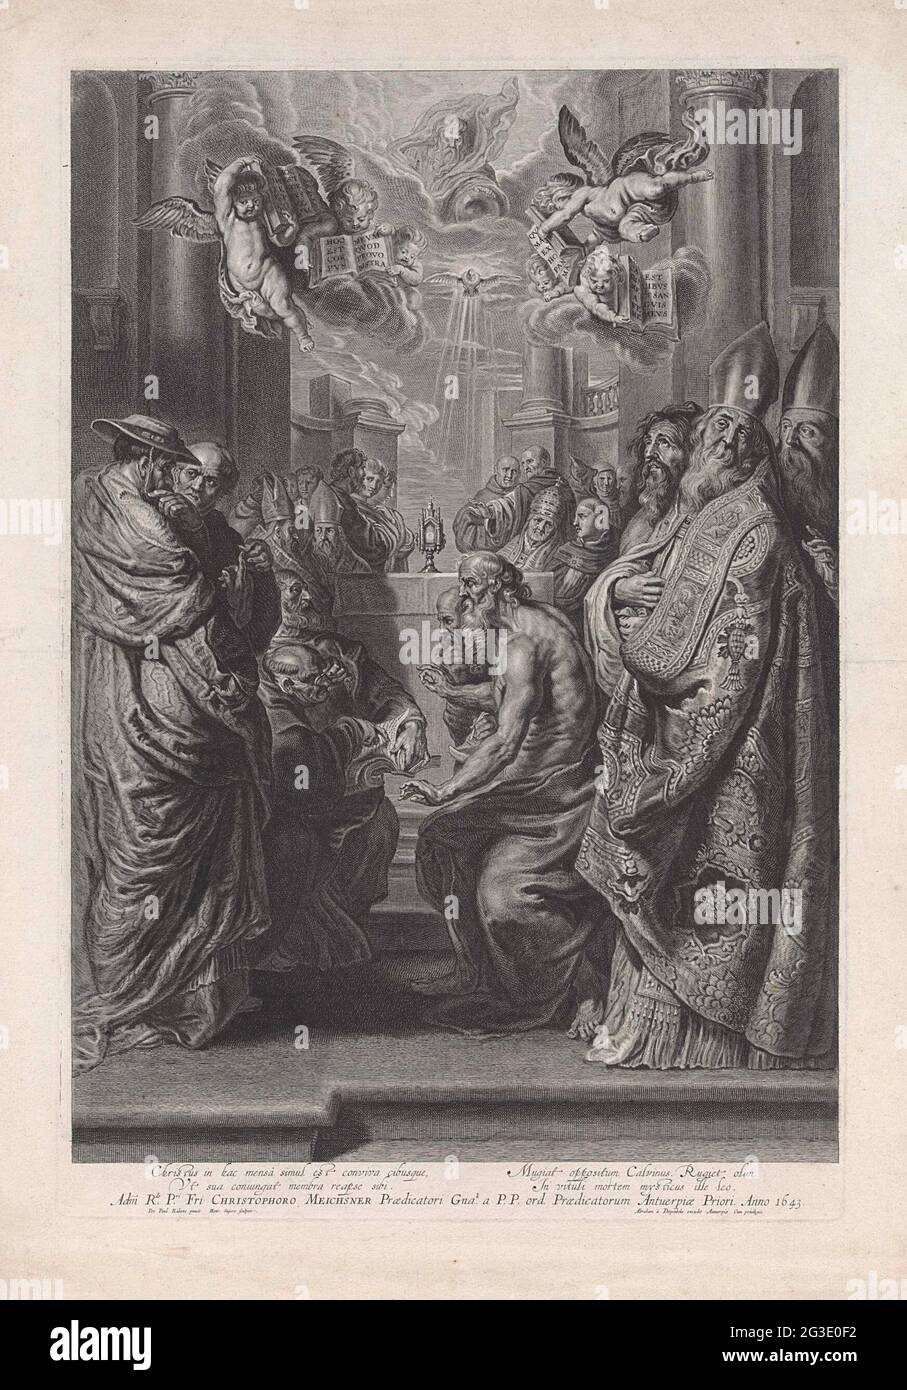 Padres de la Iglesia. Los padres de la iglesia alrededor de un altar sobre  el cual un Monstrans, que es ilustrado por el Espíritu Santo en la forma de  una paloma. En